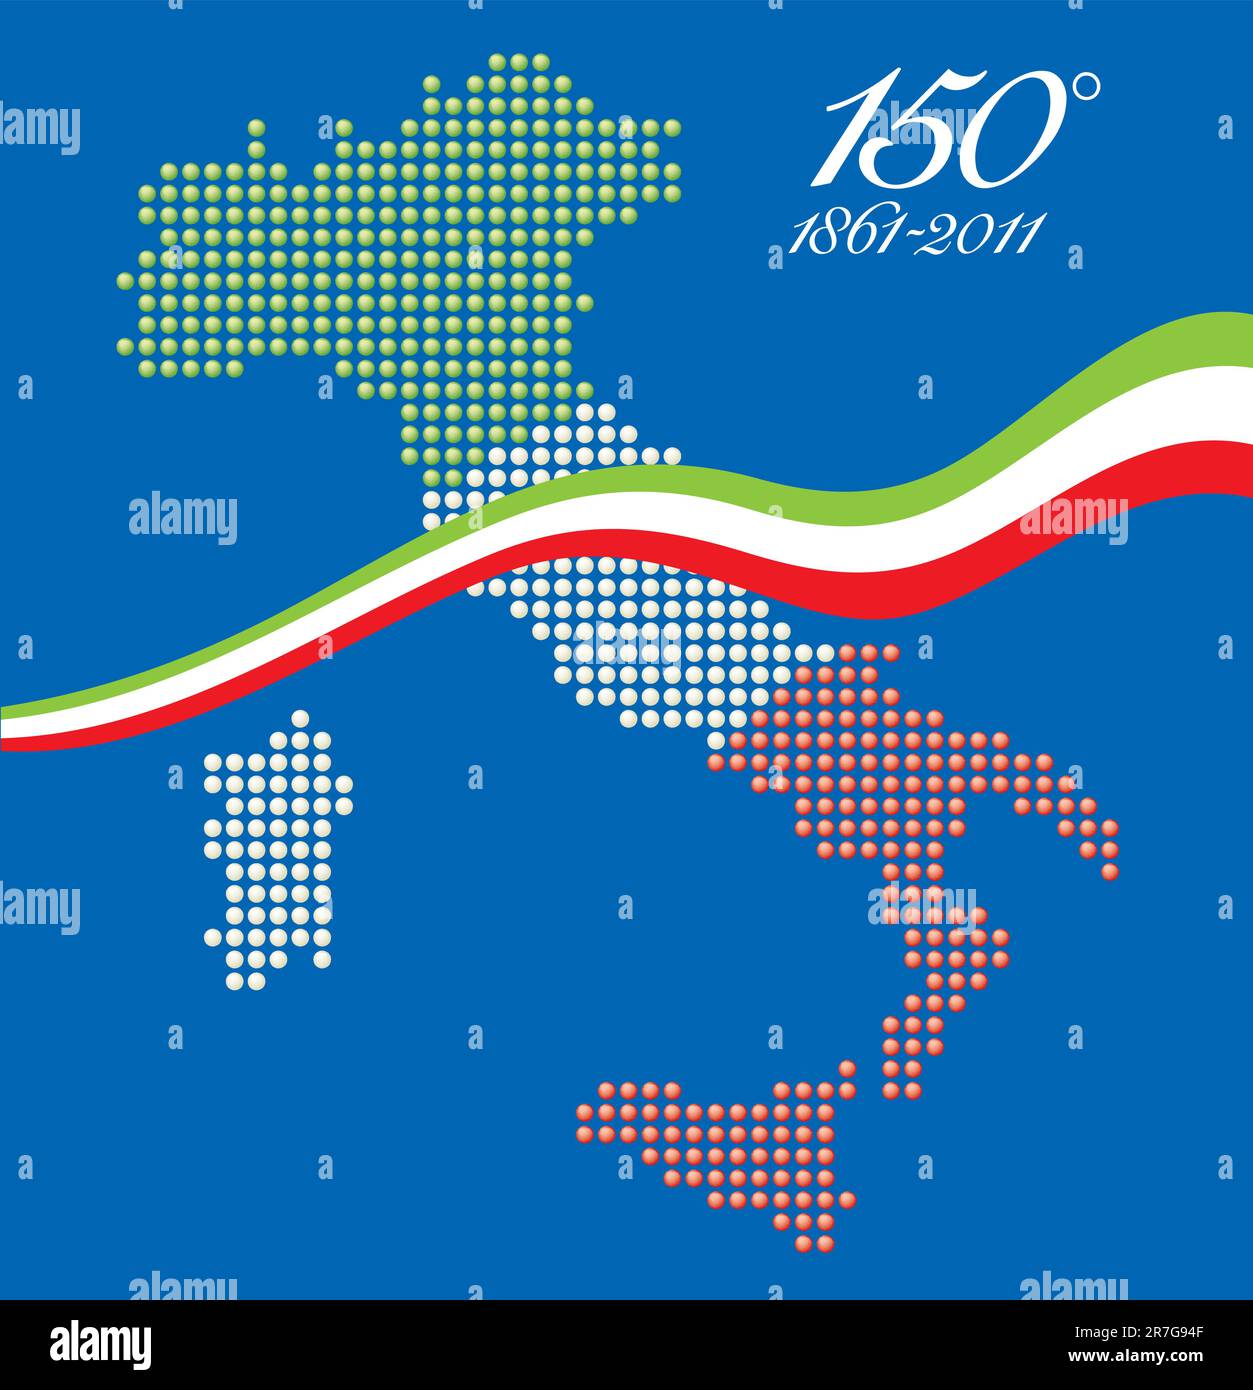 Illustrazione per il 150° anniversario dell'unità italiana, con una mappa grafica dell'Italia rappresentata come sfere LED con colori bandiera italiana Illustrazione Vettoriale